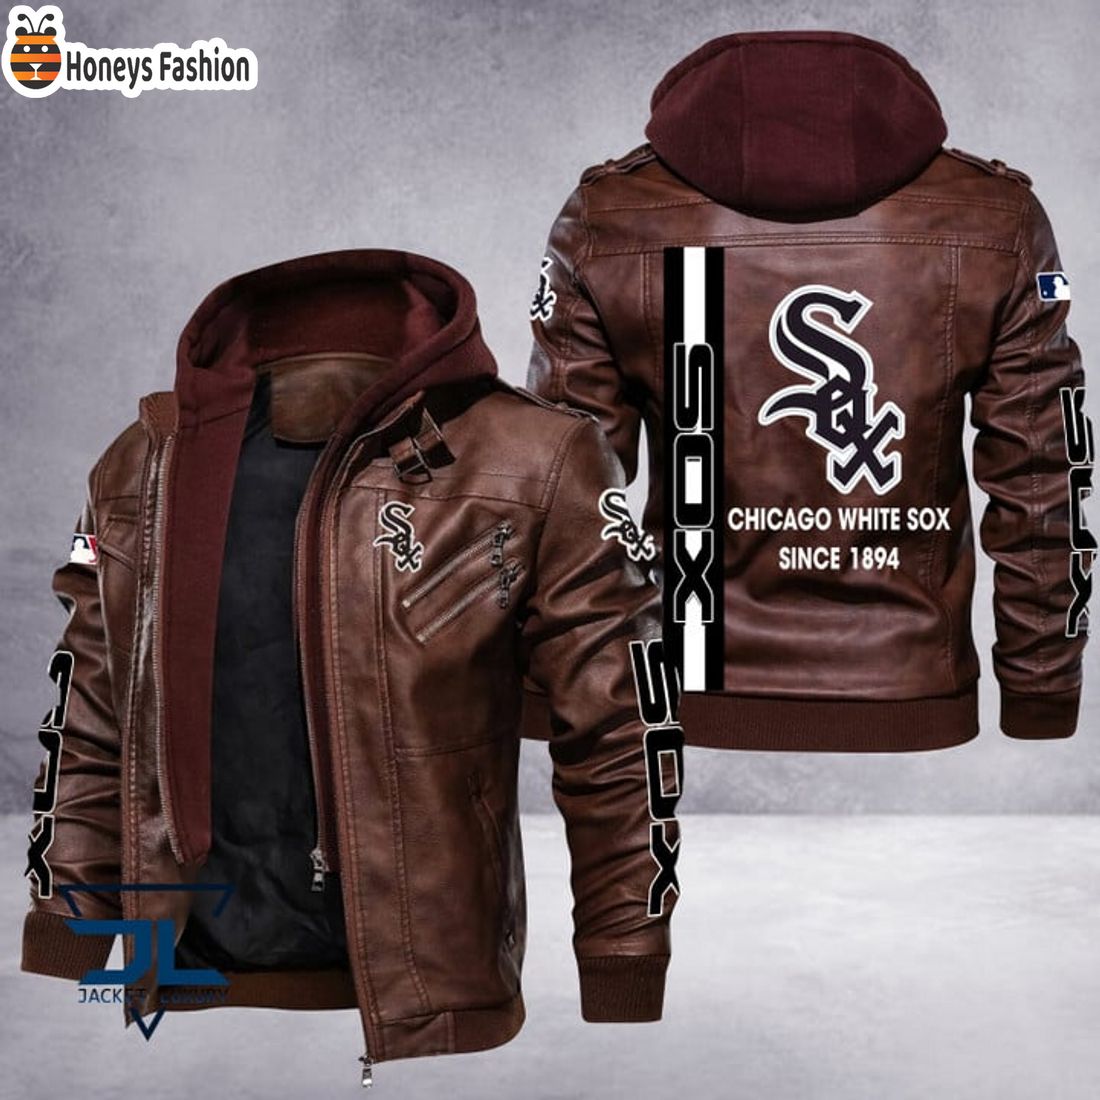 HOT Chicago White Sox MLB Luxury Leather Jacket